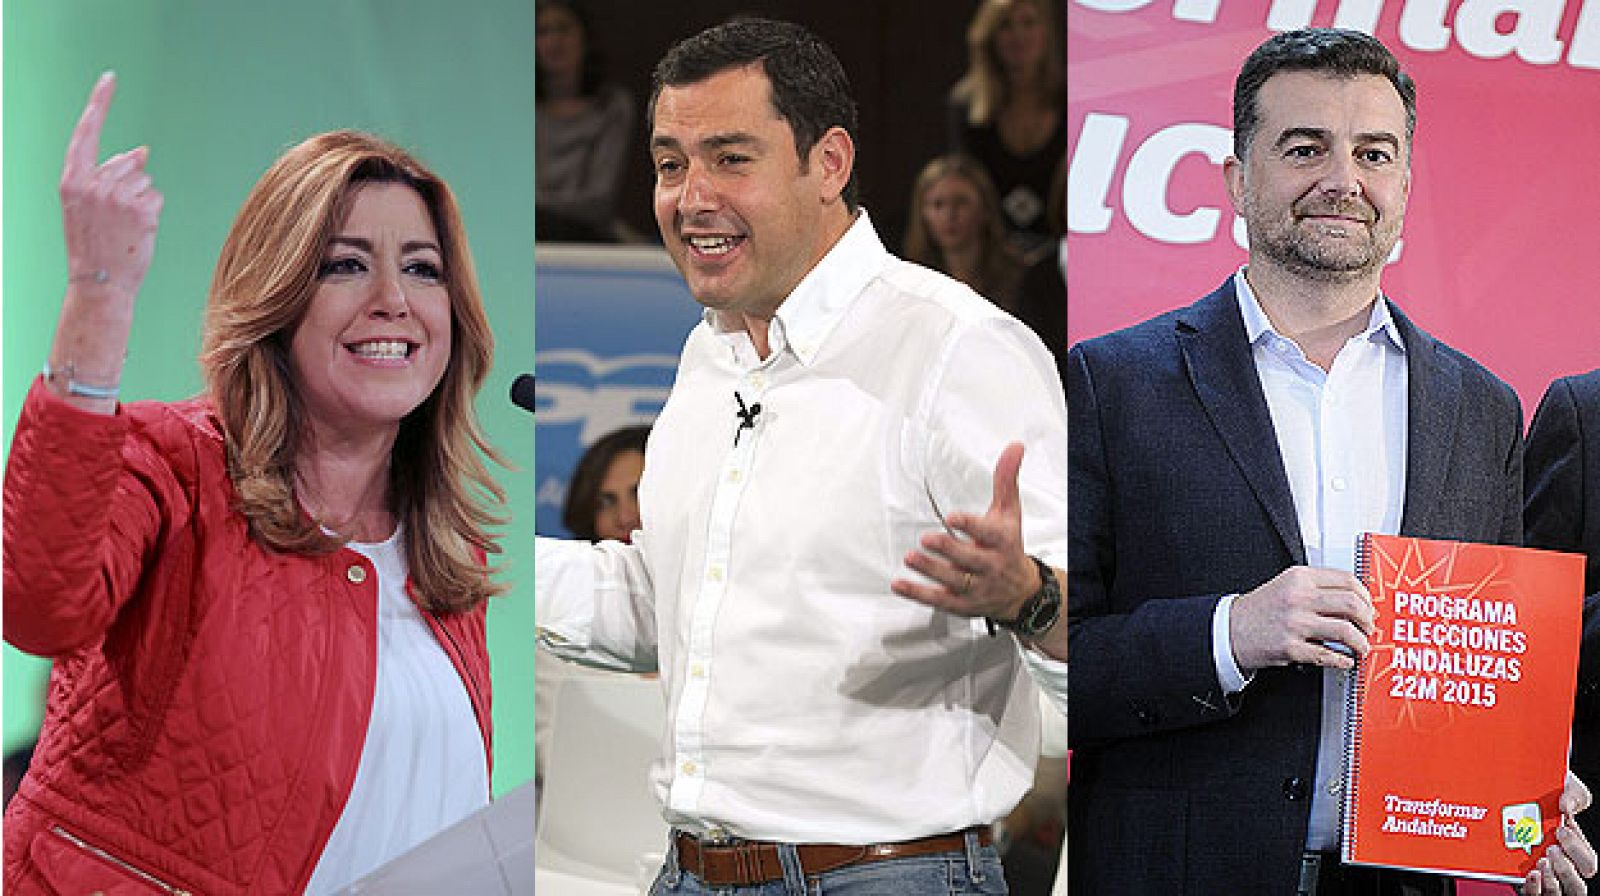 Díaz (PSOE), Moreno (PP) y Maíllo (IU) son los tres candidatos con representación parlamentaria.